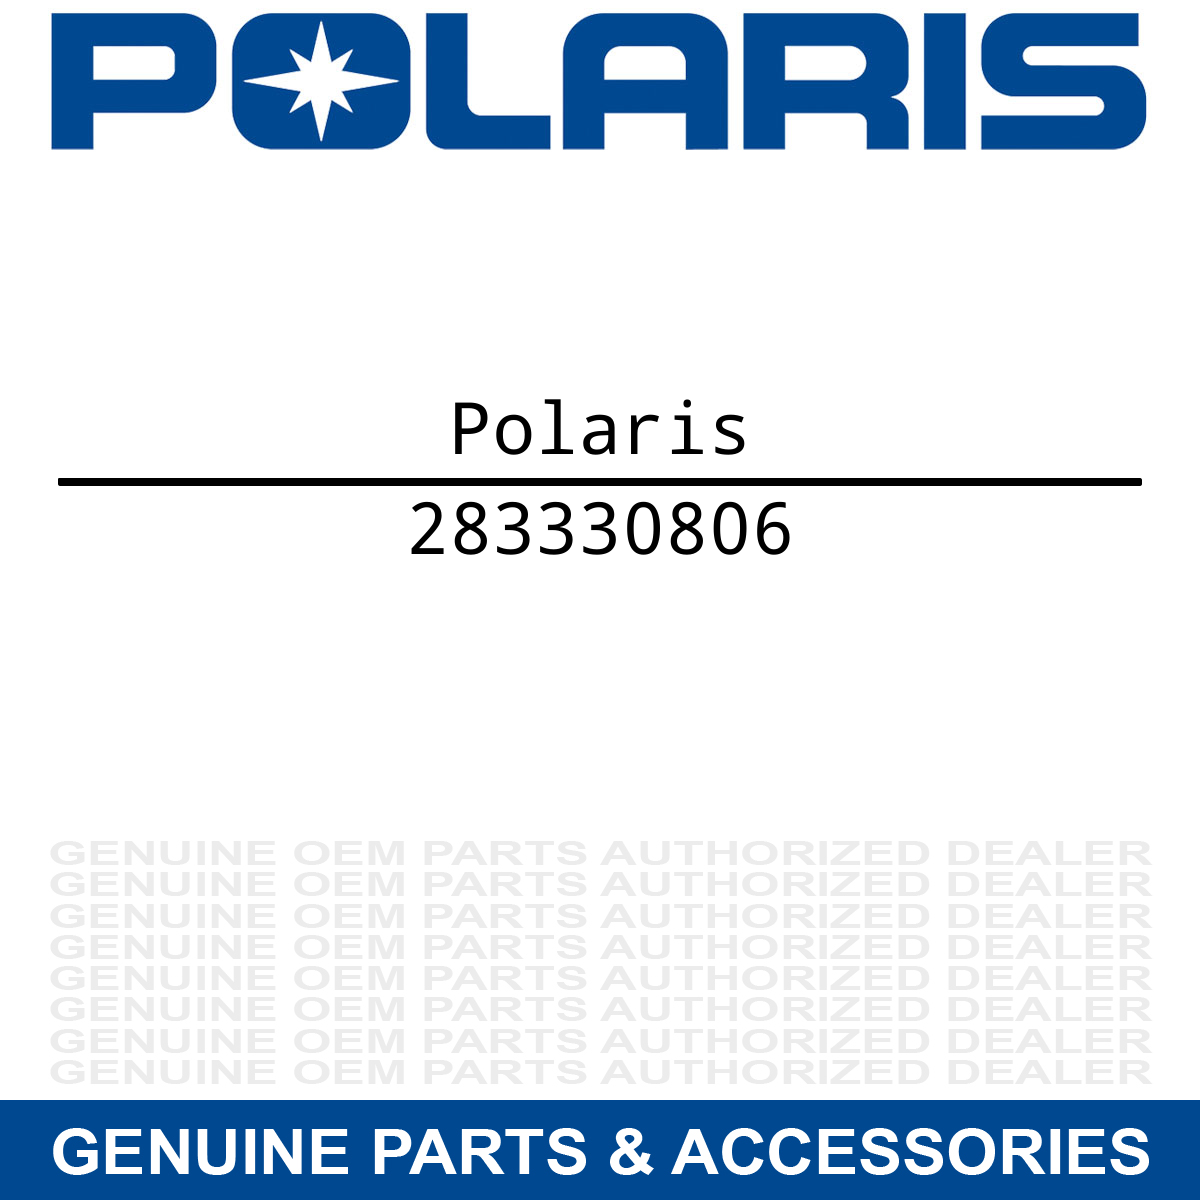 Polaris 283330806